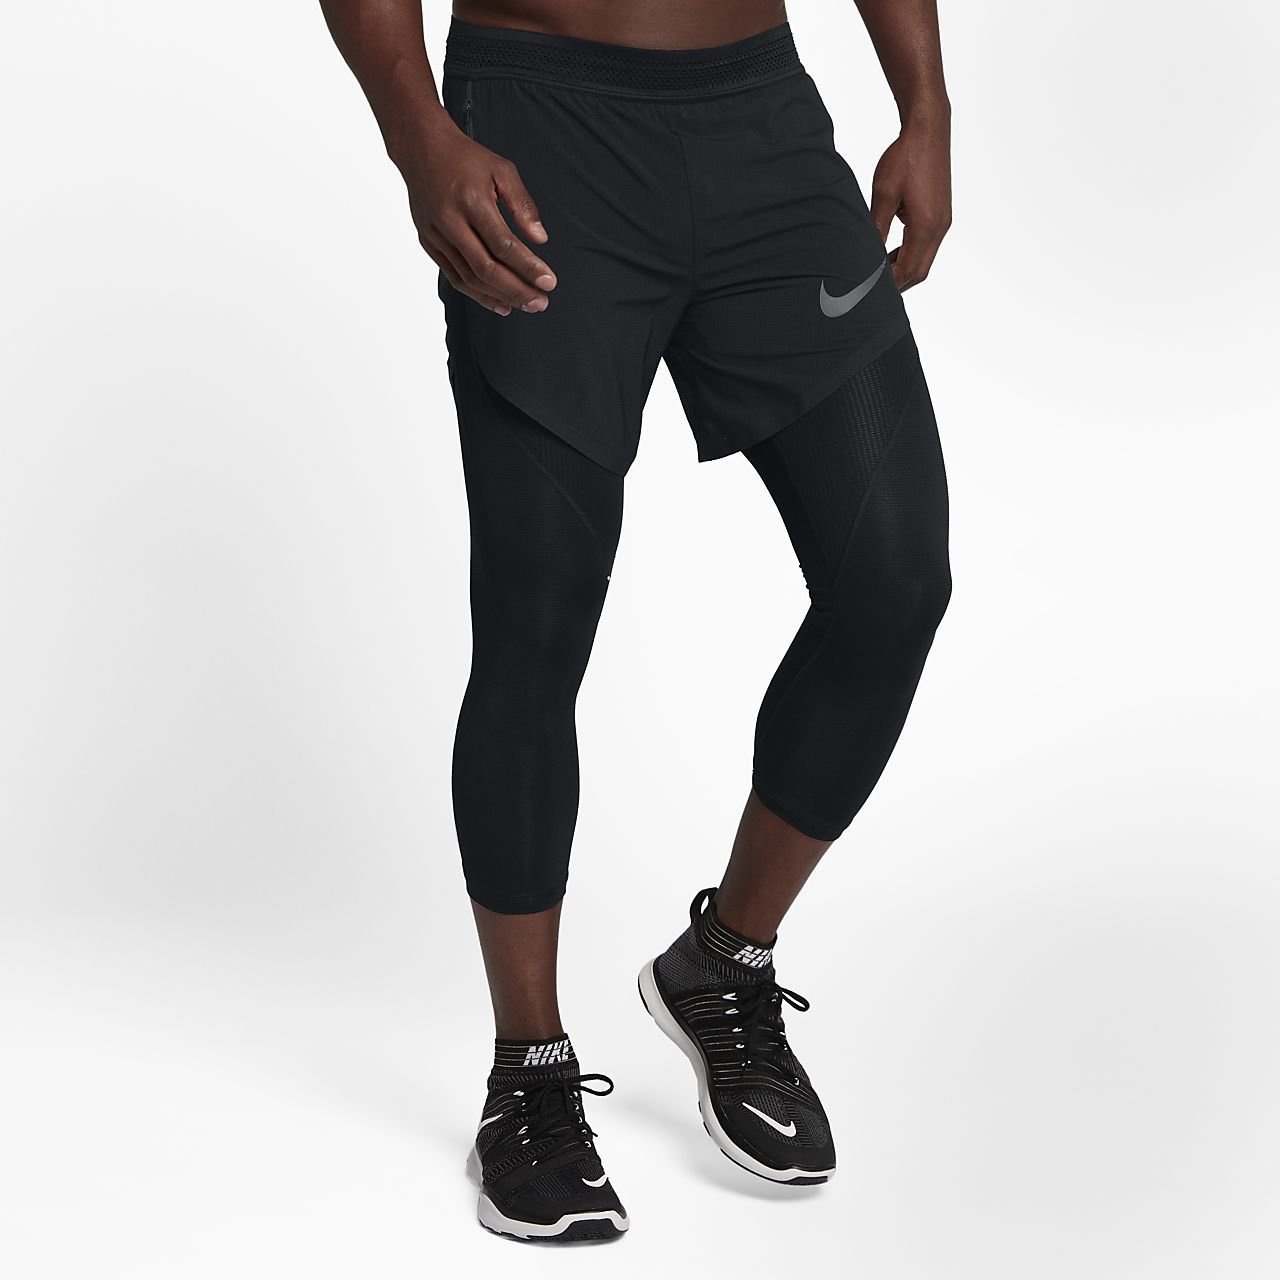 Лосины под шорты. Тайтсы Nike Hypercool мужские. Nike Training тайтсы и шорты. Nike Training Flex 2 in 1 short. Шорты с тайтсами мужские Nike.